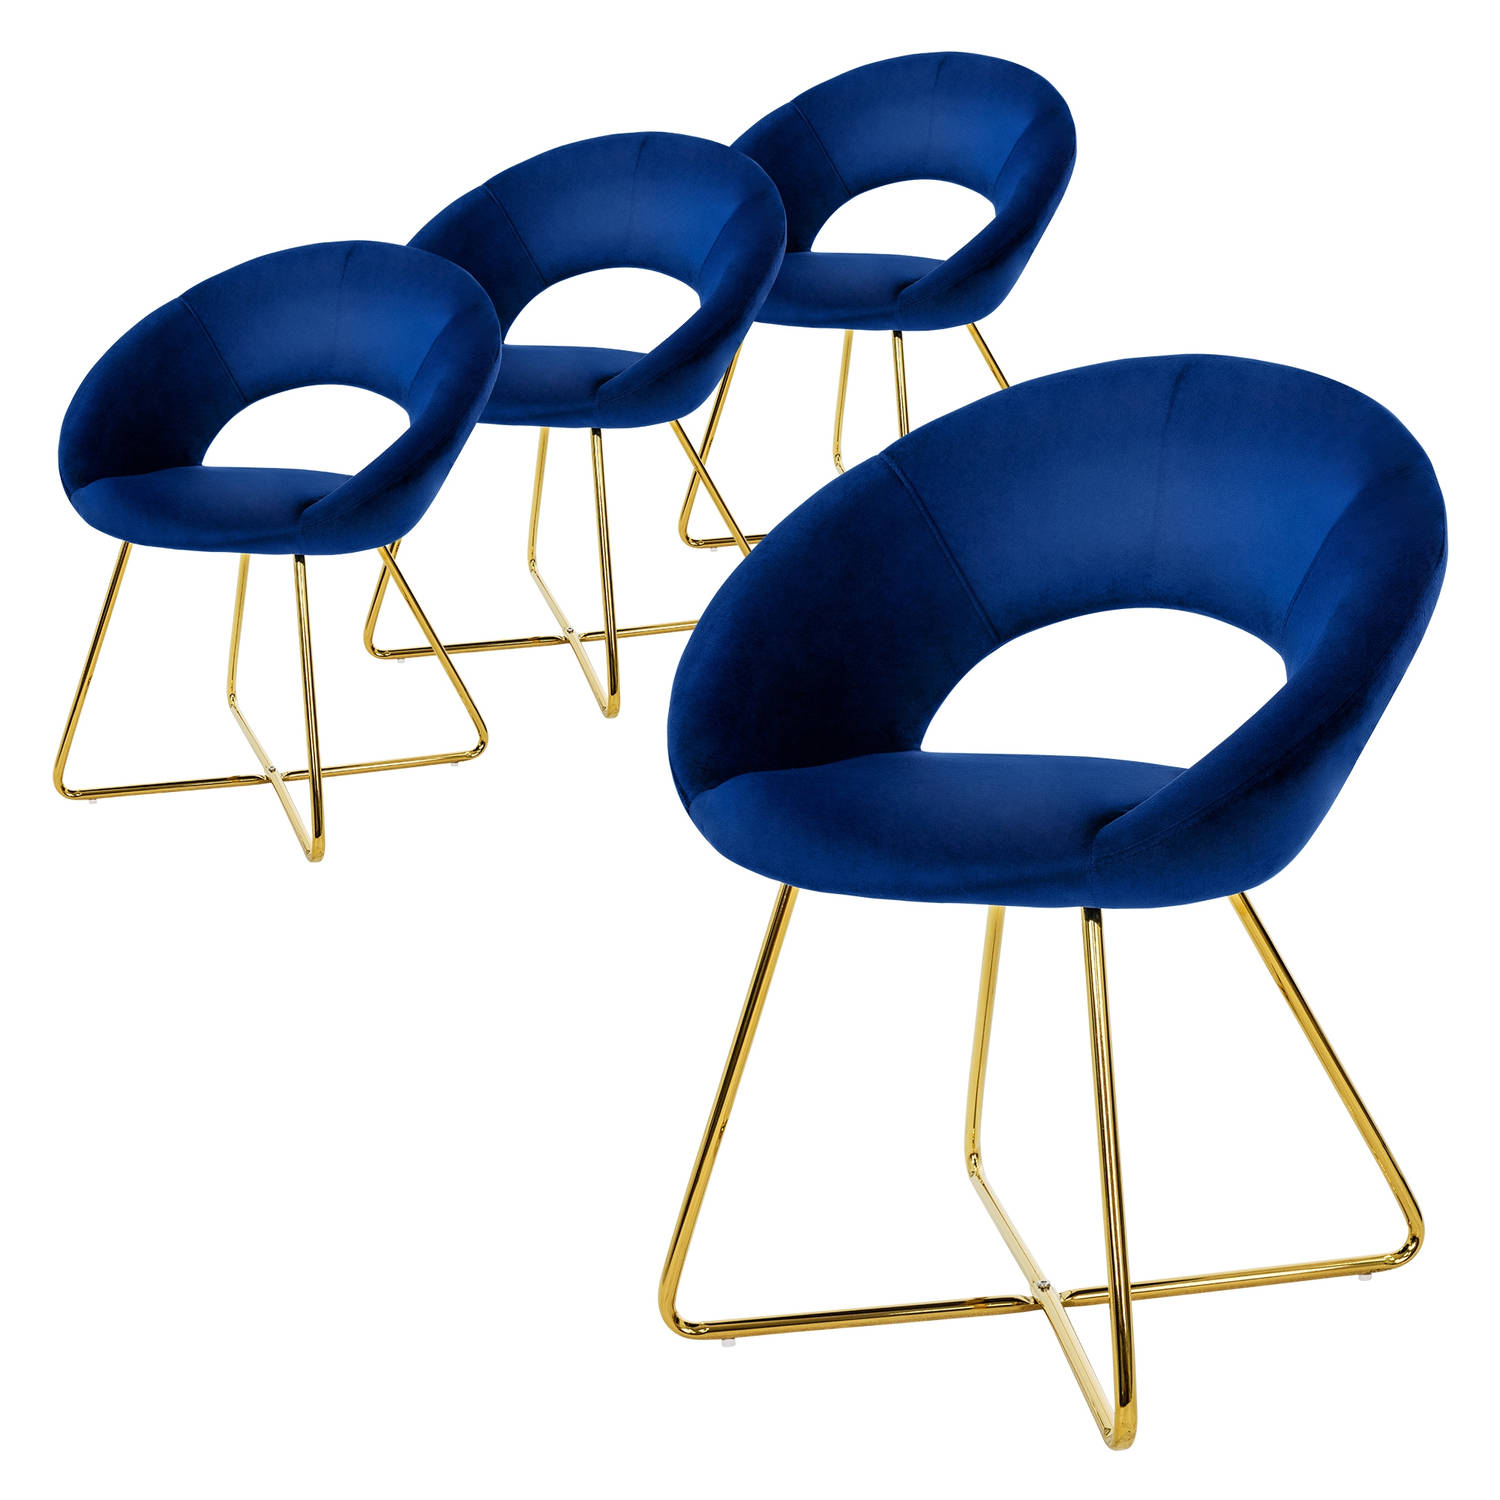 ML-Design eetkamerstoelen set van 4 blauw fluweel, woonkamerstoel met ronde rugleuning, gestoffeerde stoel met gouden metalen poten, ergonomische eettafel fauteuil, keukenstoel kui